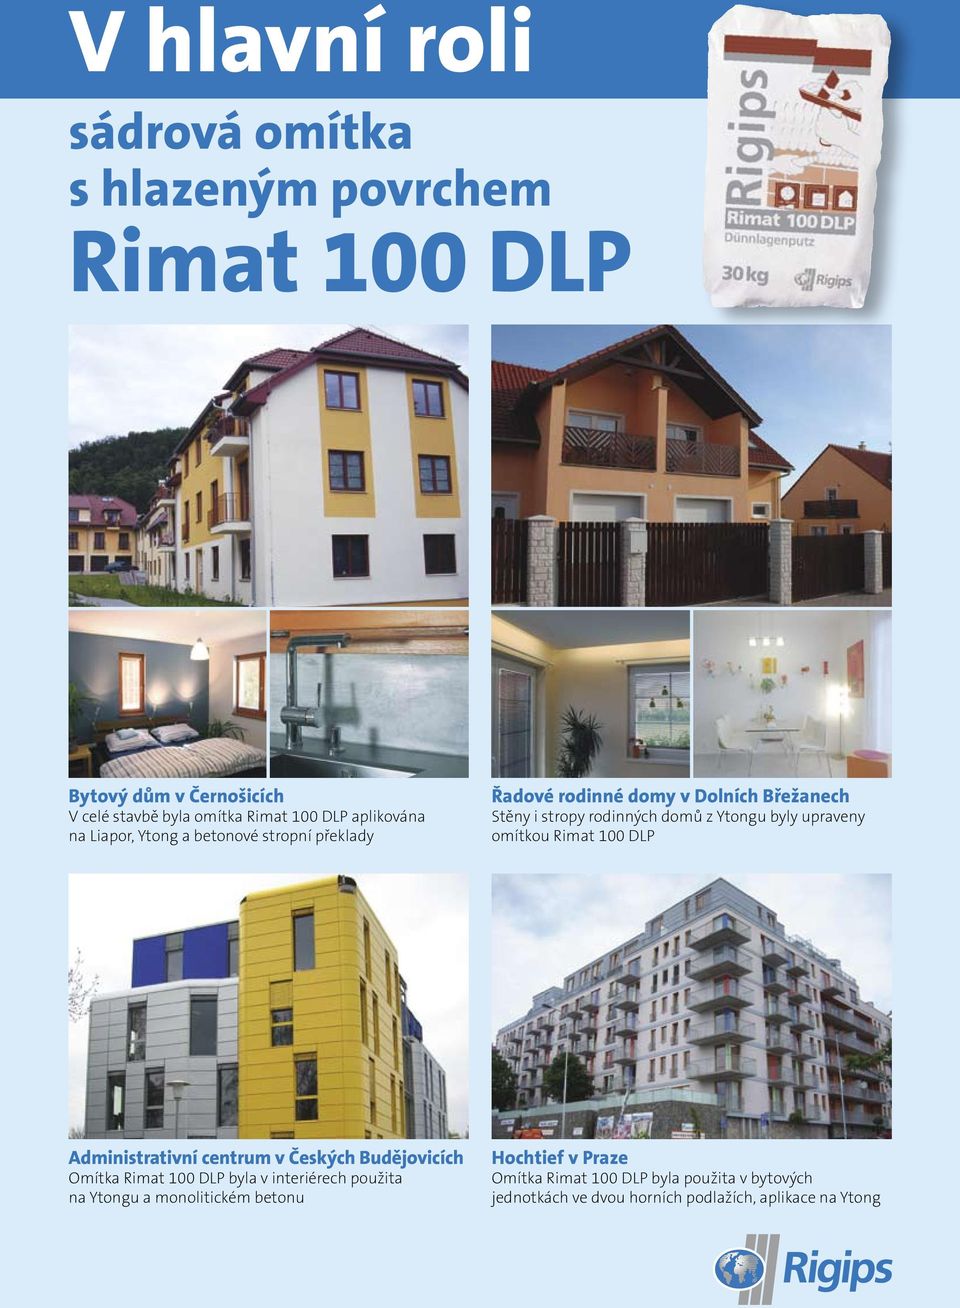 byly upraveny omítkou Rimat 100 DLP Administrativní centrum v Českých Budějovicích Omítka Rimat 100 DLP byla v interiérech použita na